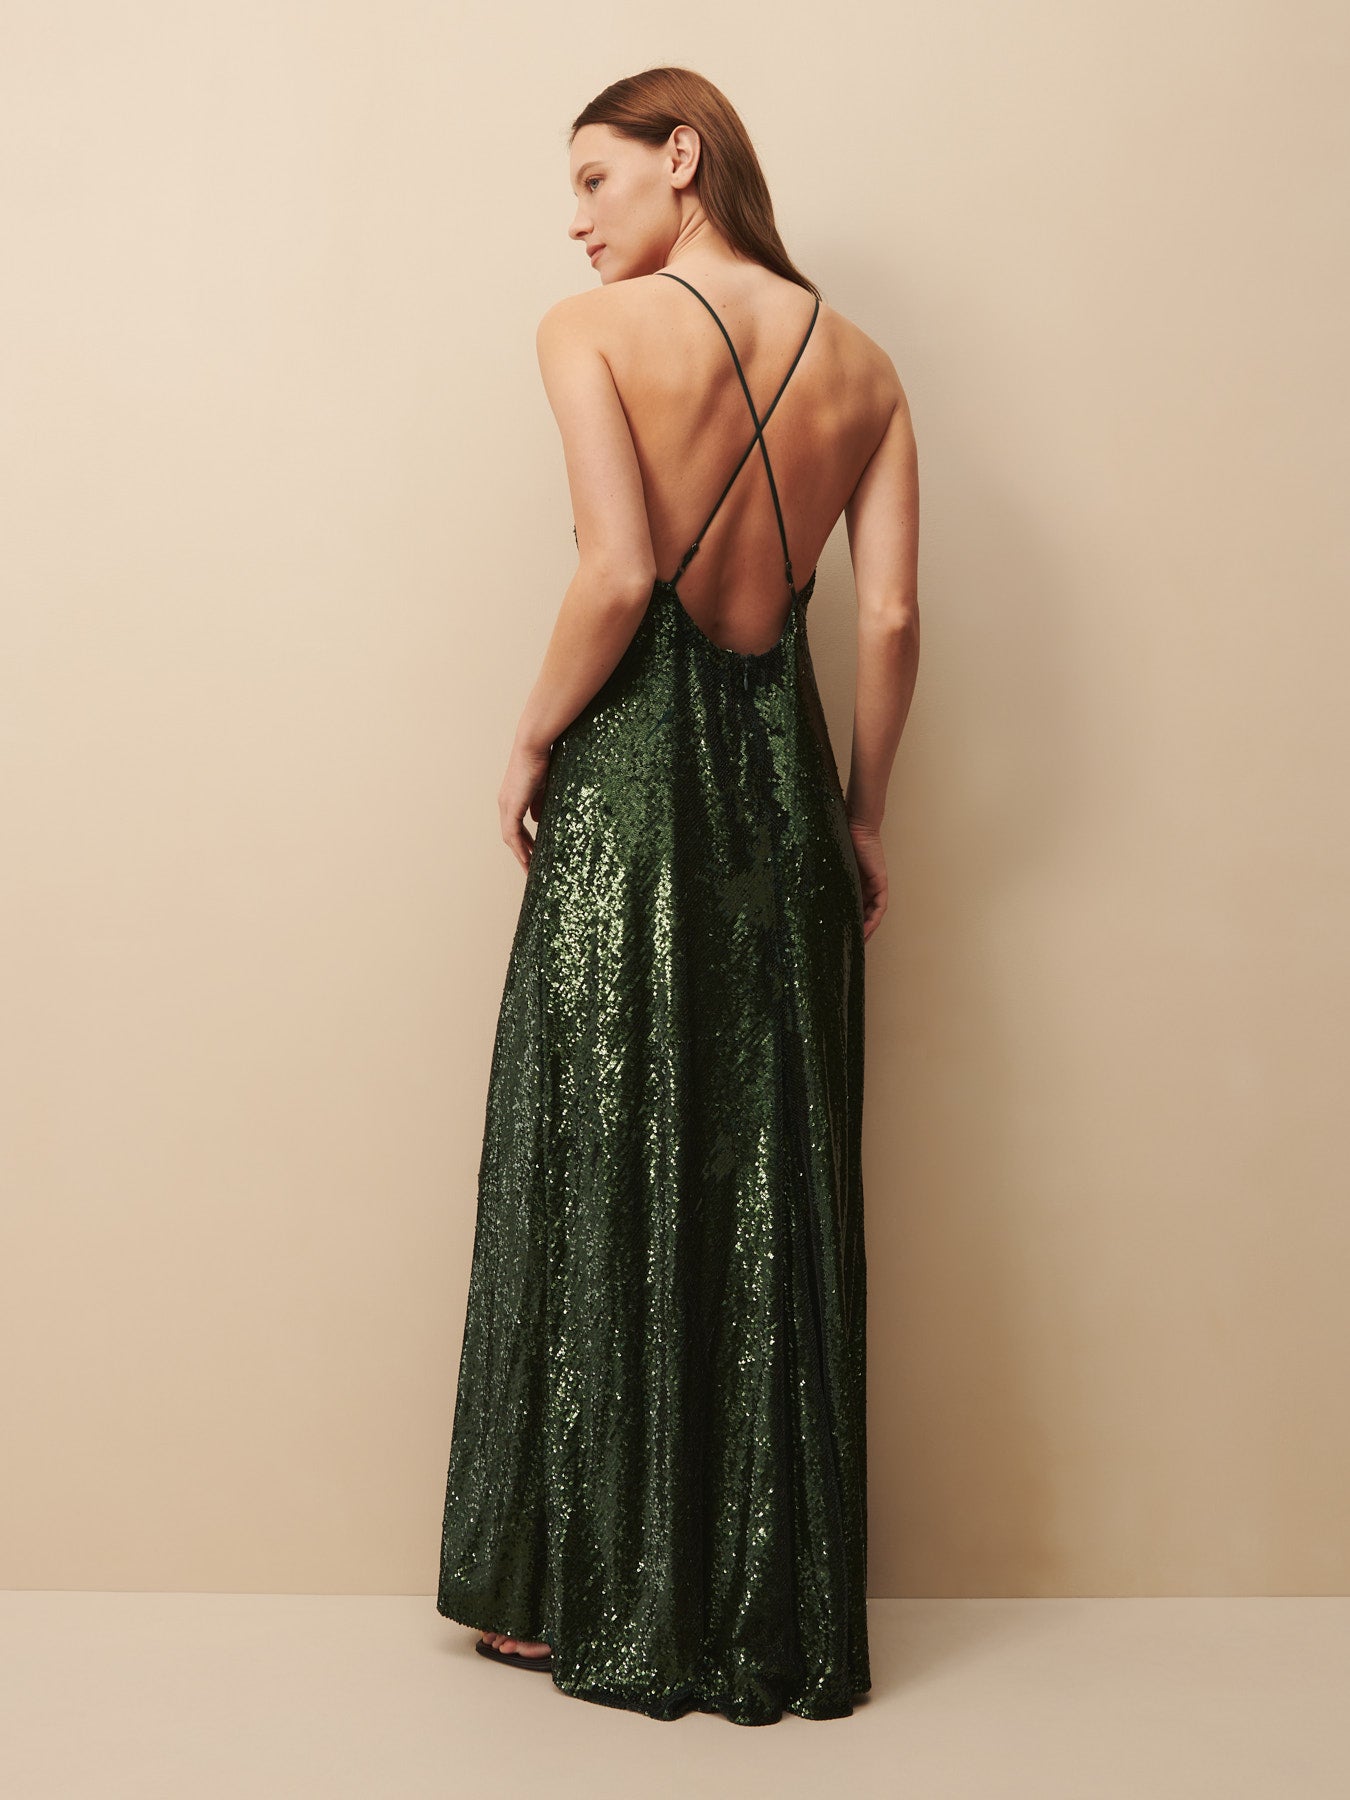 TWP Emerald Josephine Dress in sequin view 2